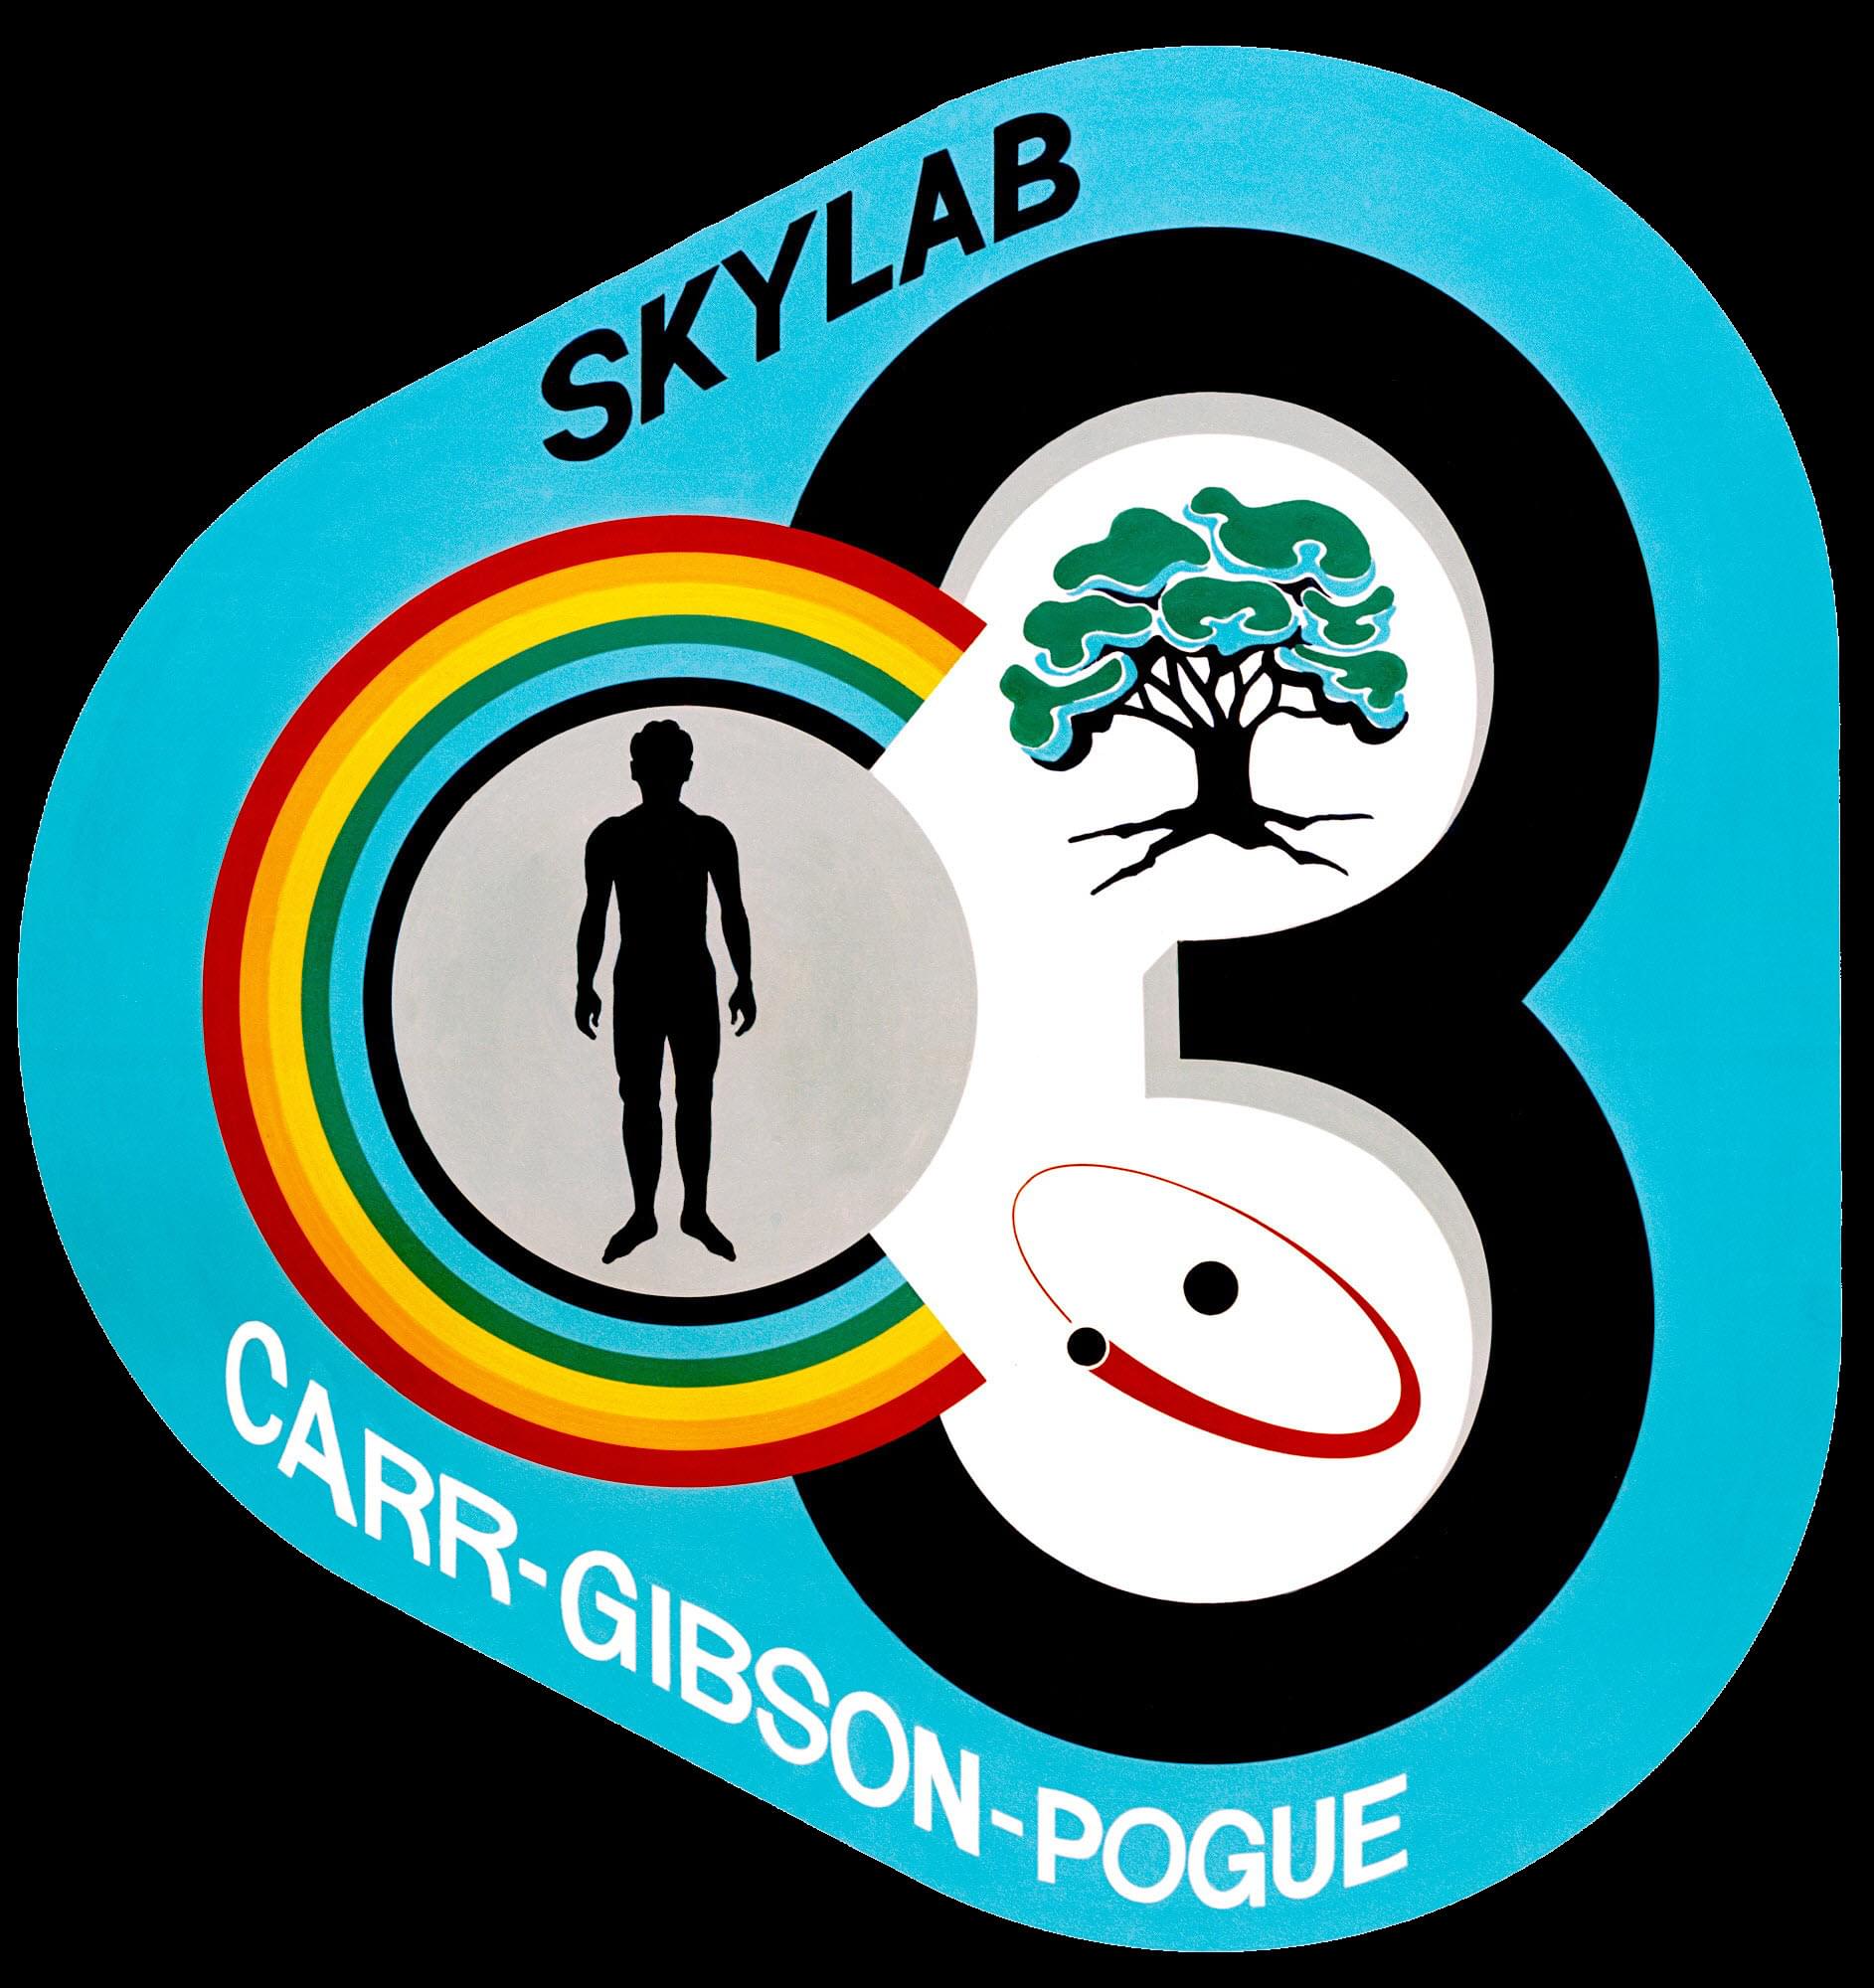 Skylab 3 mission patch